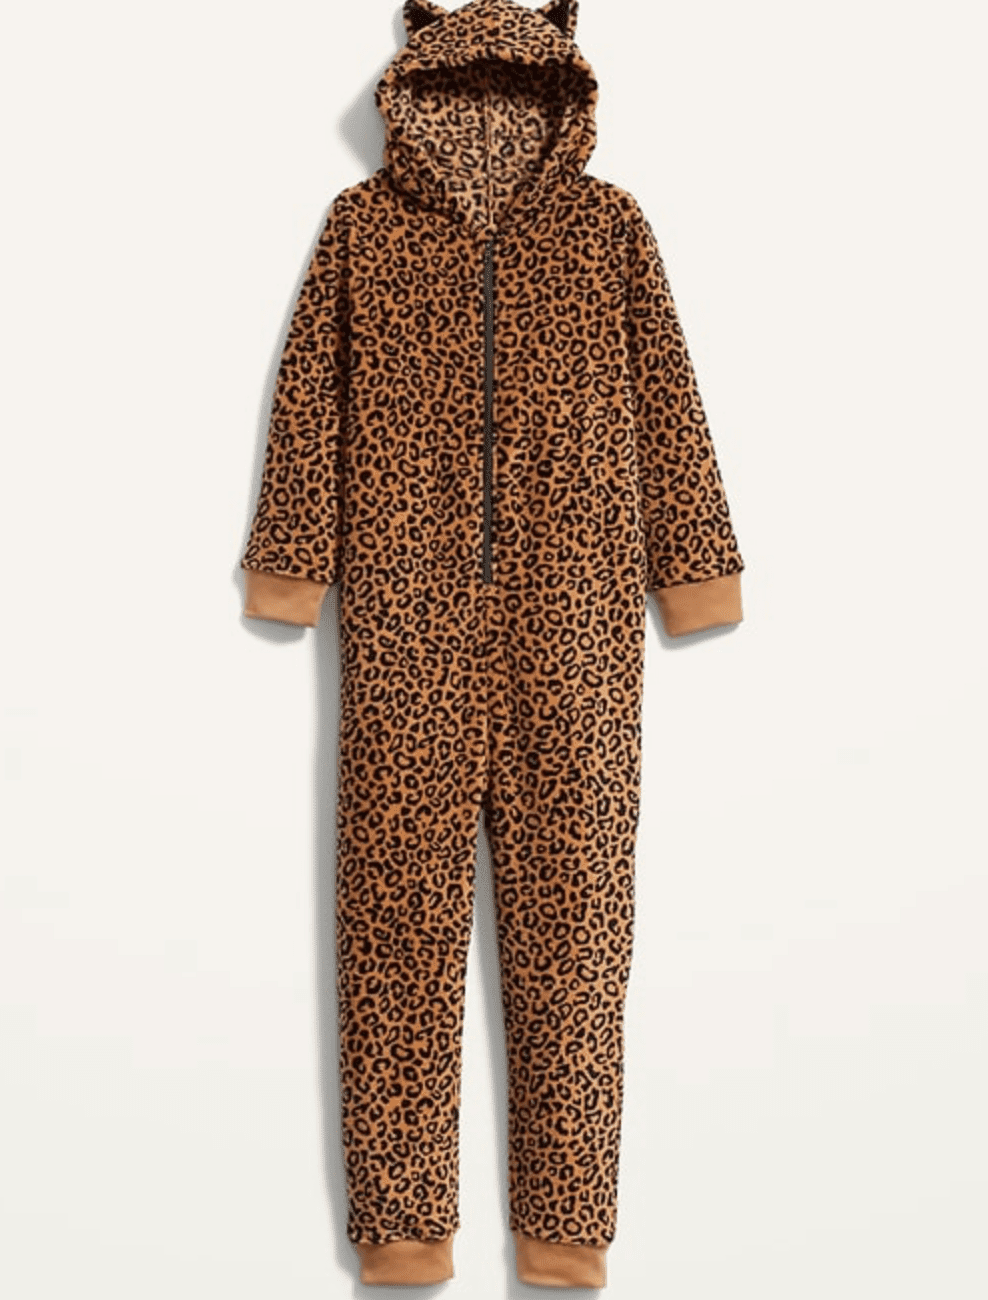 leopard onesie for kids